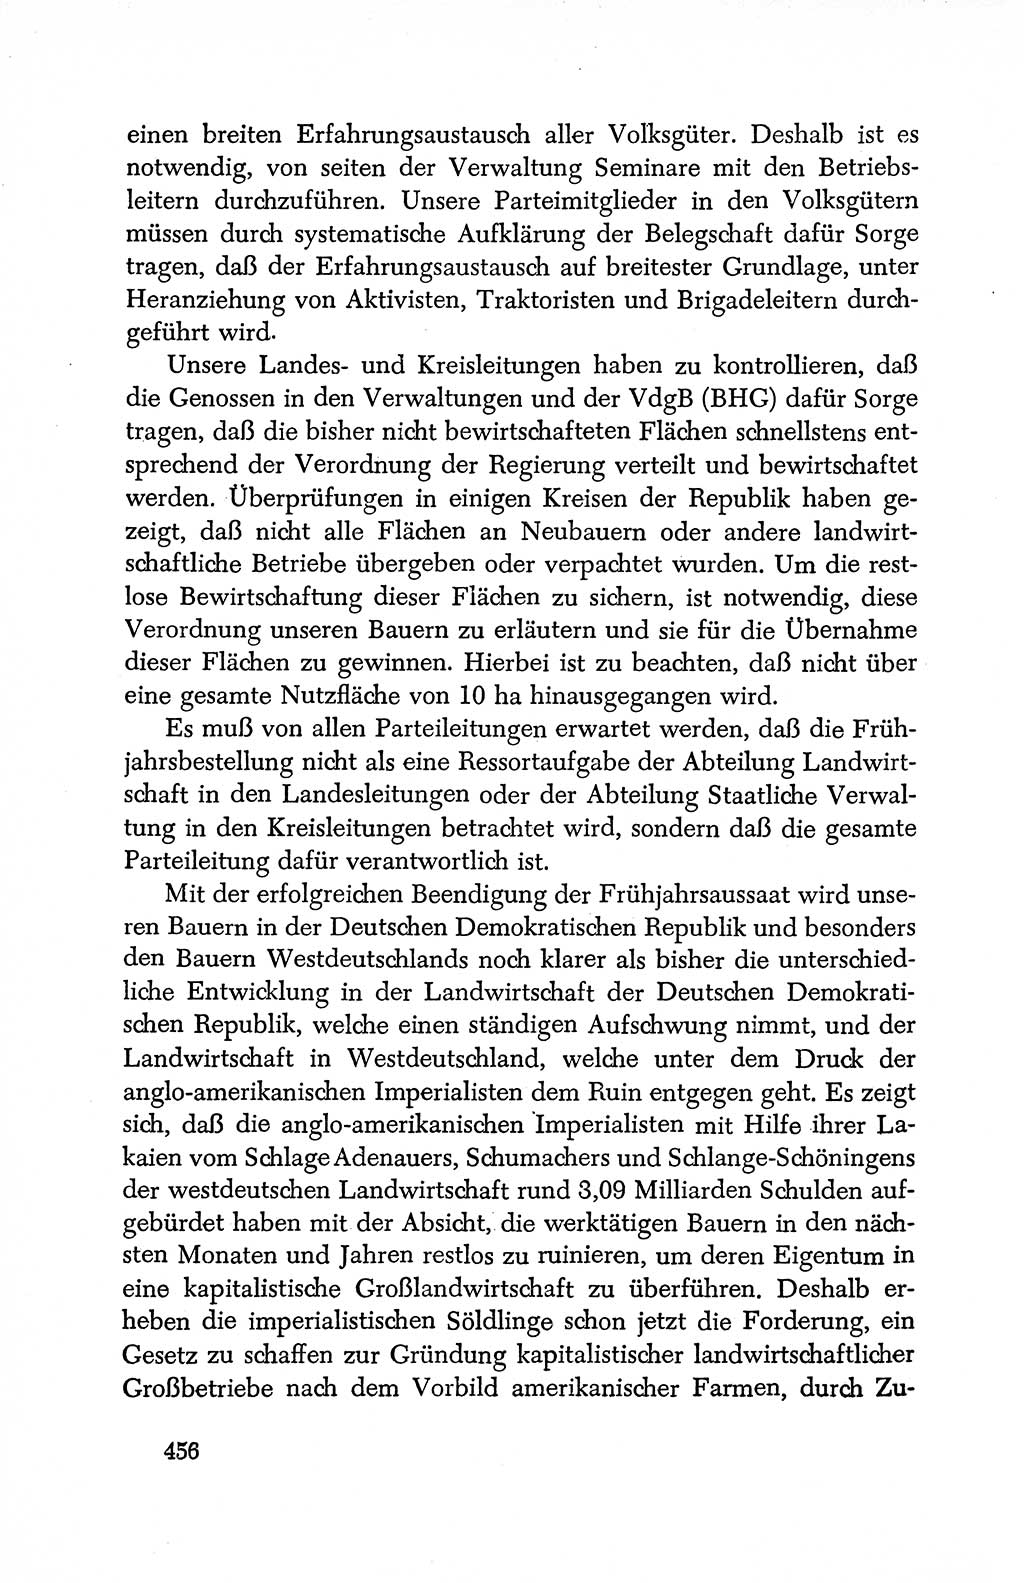 Dokumente der Sozialistischen Einheitspartei Deutschlands (SED) [Deutsche Demokratische Republik (DDR)] 1950-1952, Seite 456 (Dok. SED DDR 1950-1952, S. 456)